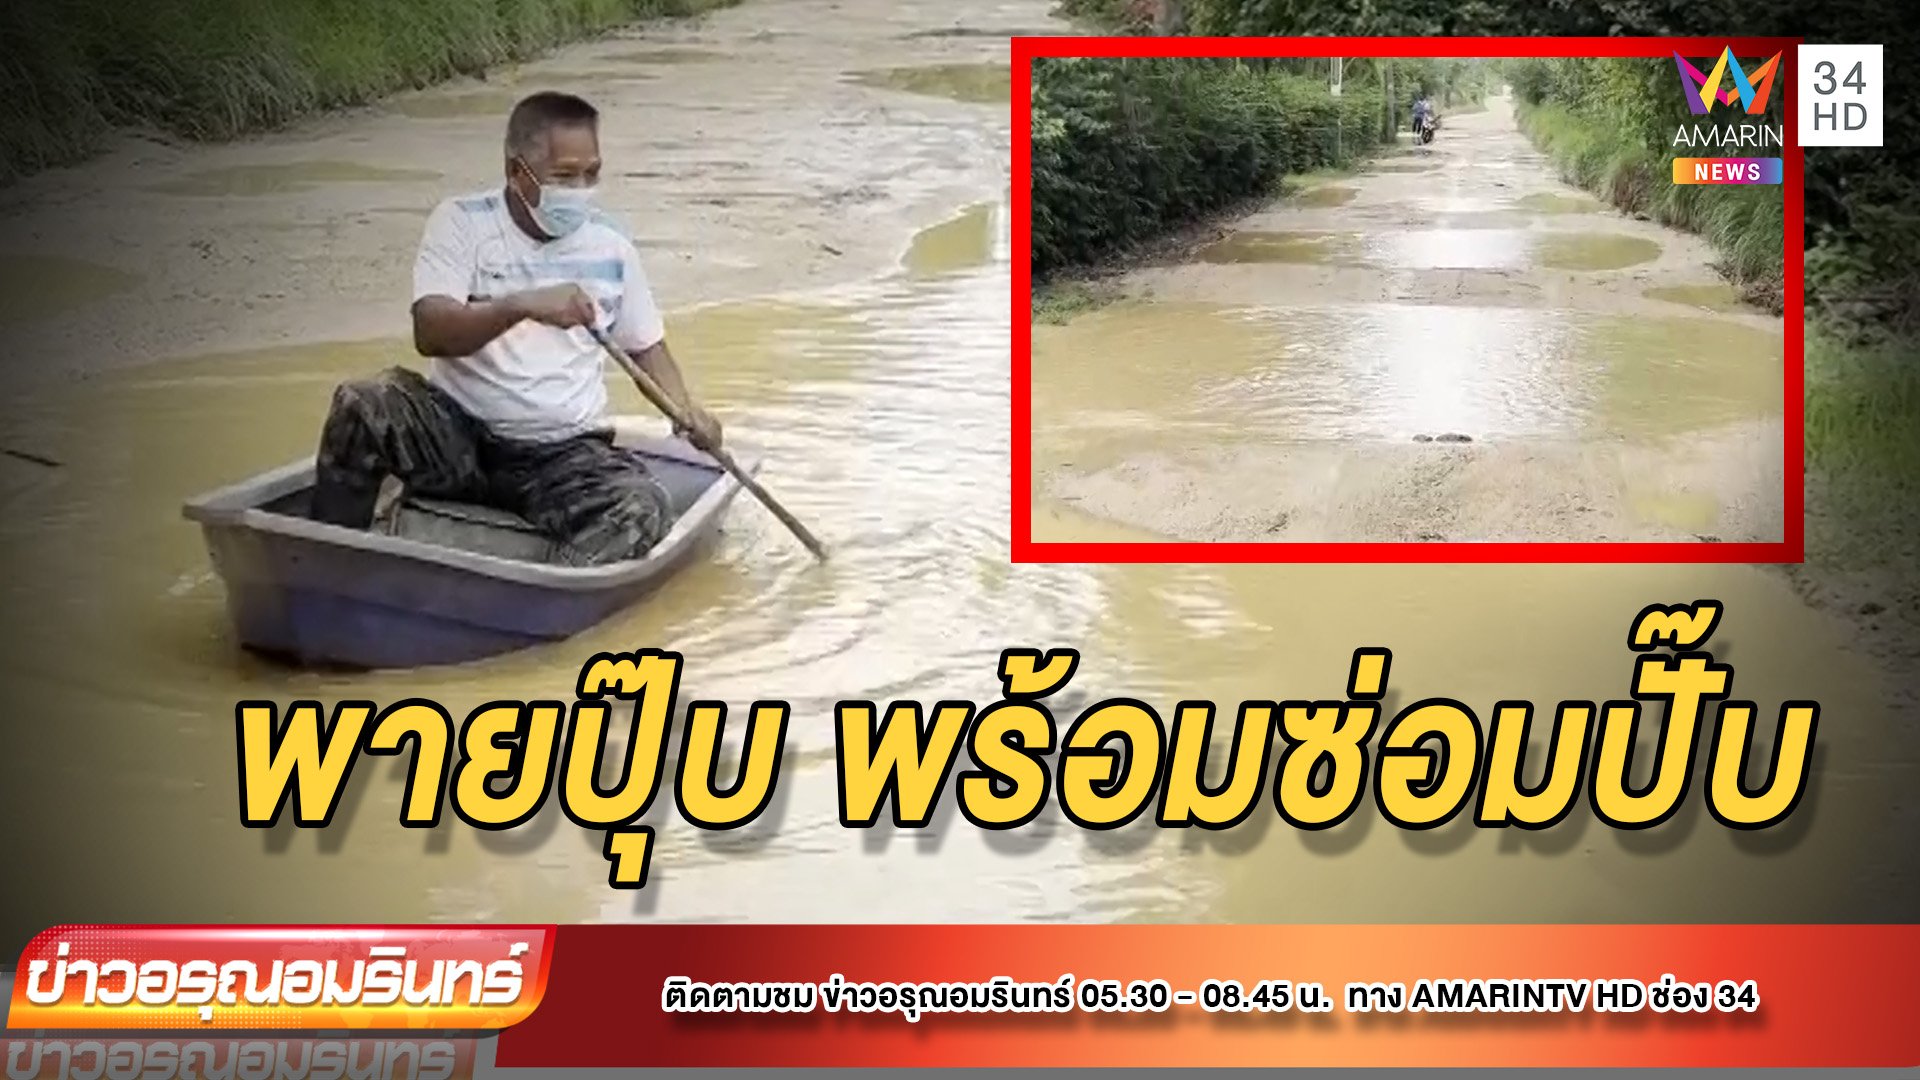 คลอดงบซ่อมถนนกันดาร หลังชาวบ้านพายเรือประชด | ข่าวอรุณอมรินทร์ | 18 ก.พ. 65 | AMARIN TVHD34